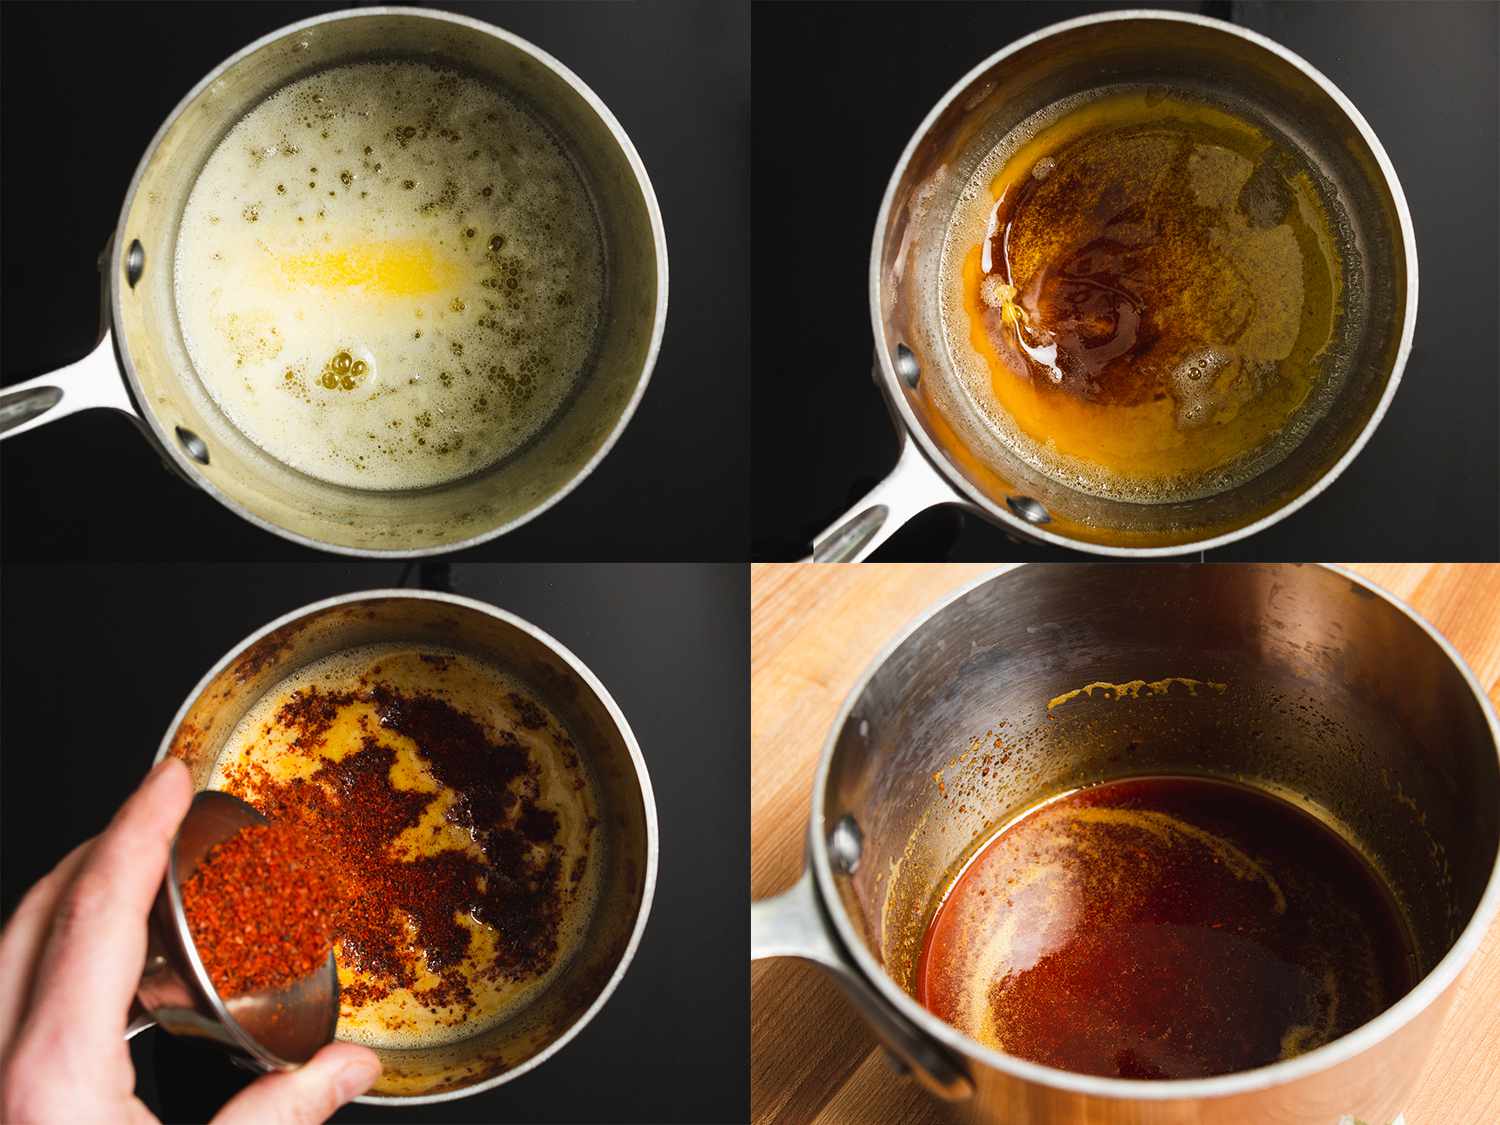 4图像拼贴:黄油在平底锅加热,黄油酱锅被晒黑,阿勒颇胡椒被添加到黄油,阿勒颇胡椒粉充分涂上黄油